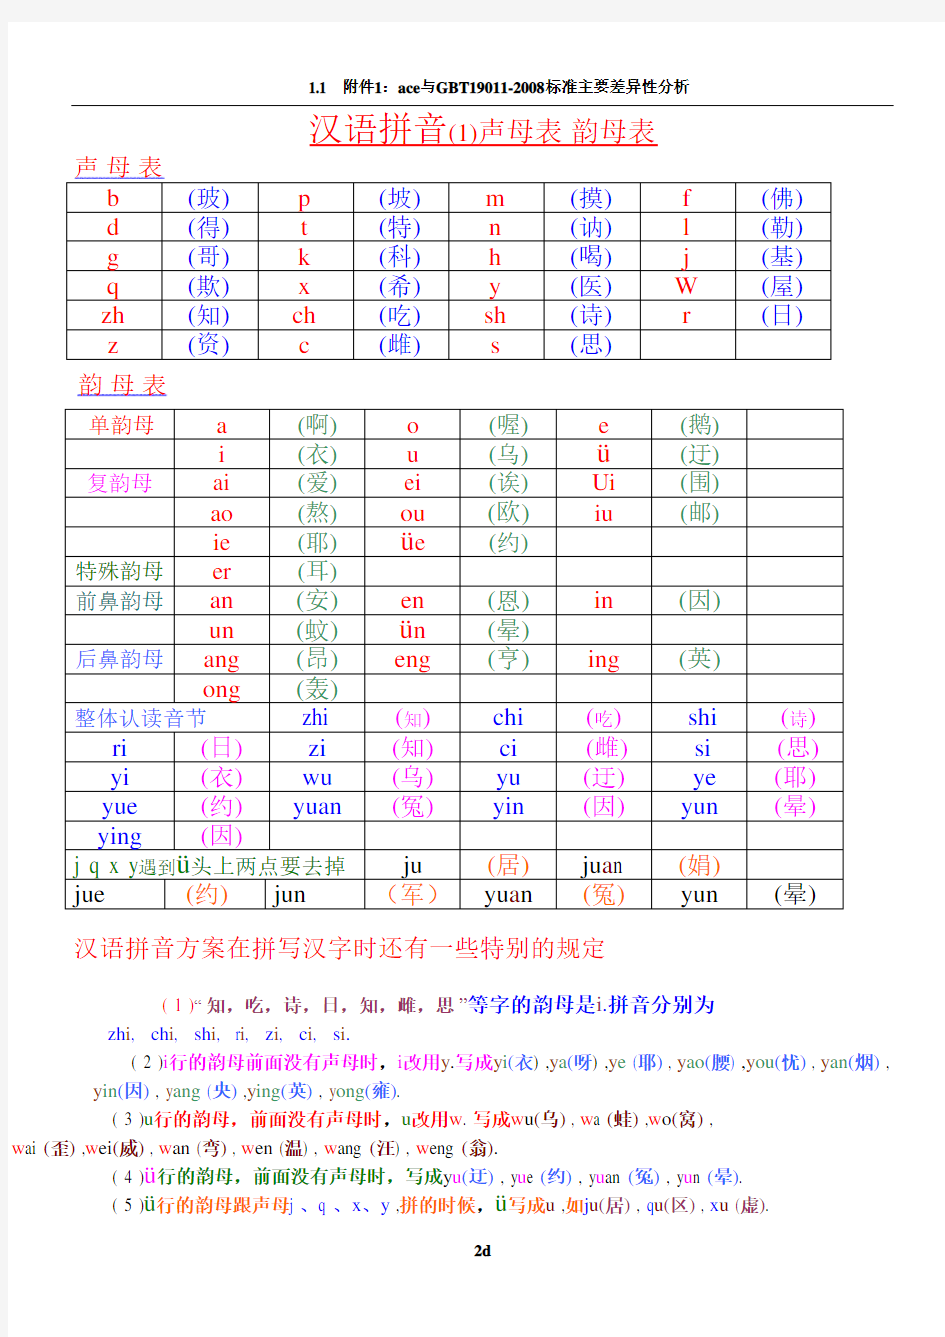 汉语拼音——声母-韵母全表